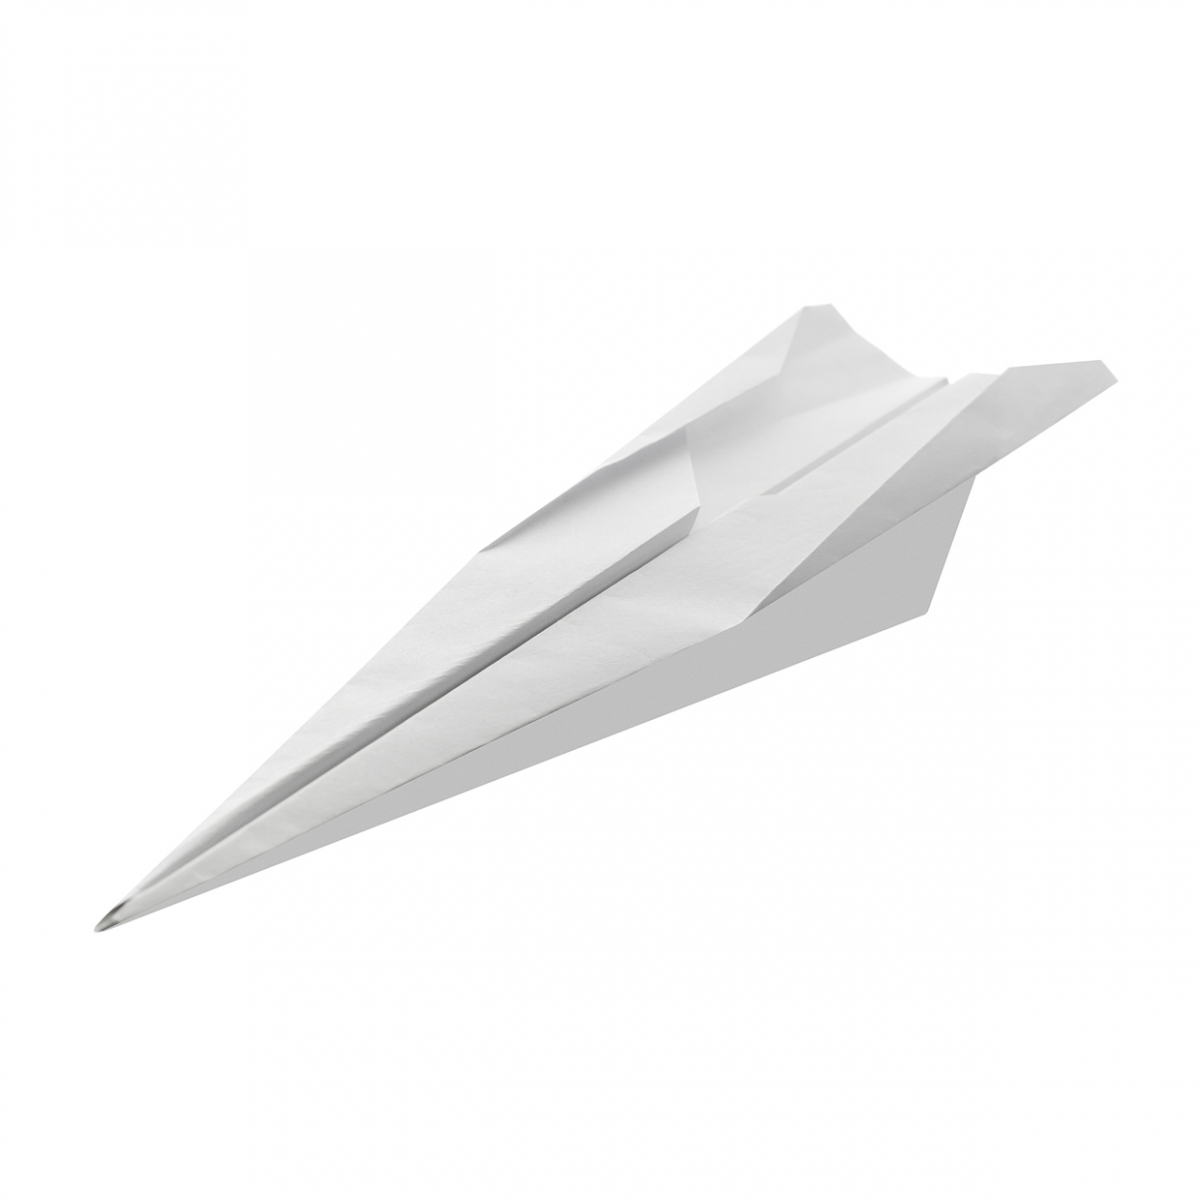 Imagen en la que se ve un avión de papel